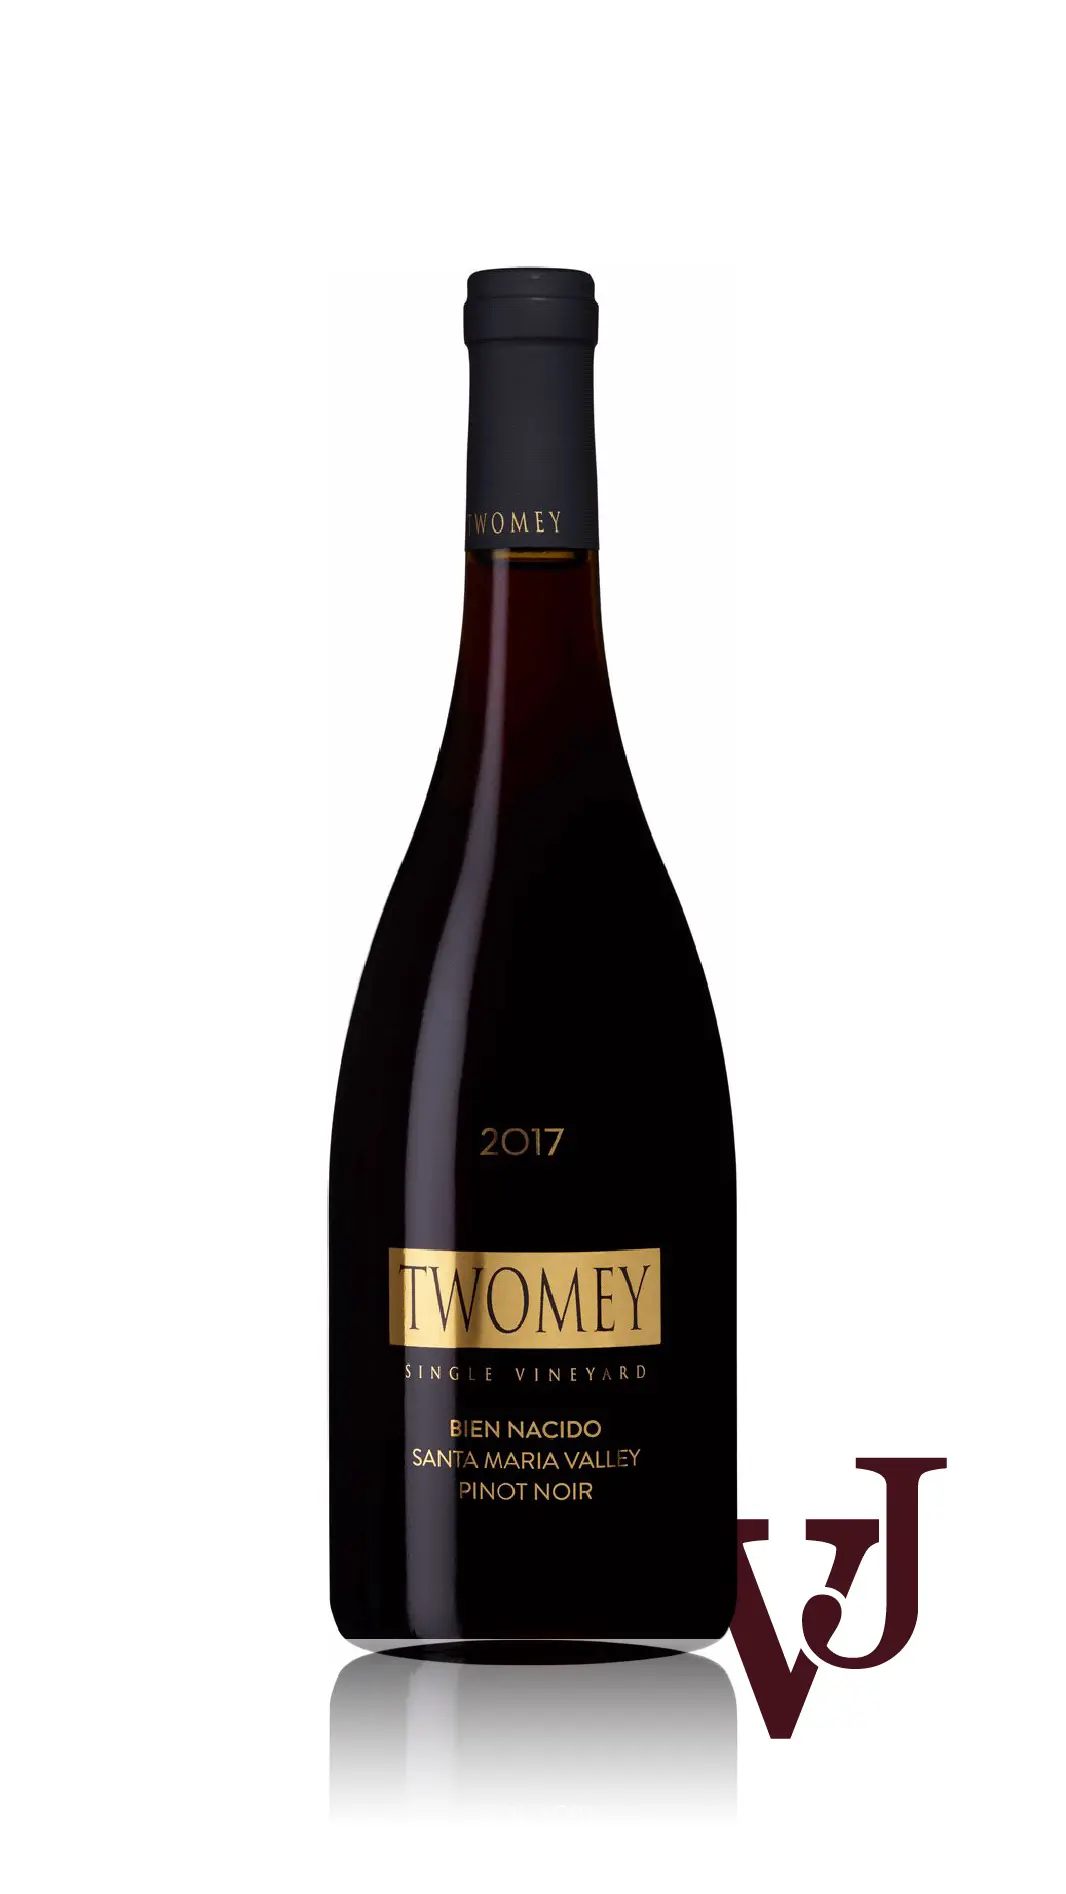 Rött Vin - Twomey Bien Nacido Pinot Noir artikel nummer 7890701 från producenten Silver Oak Cellars från området USA - Vinjournalen.se